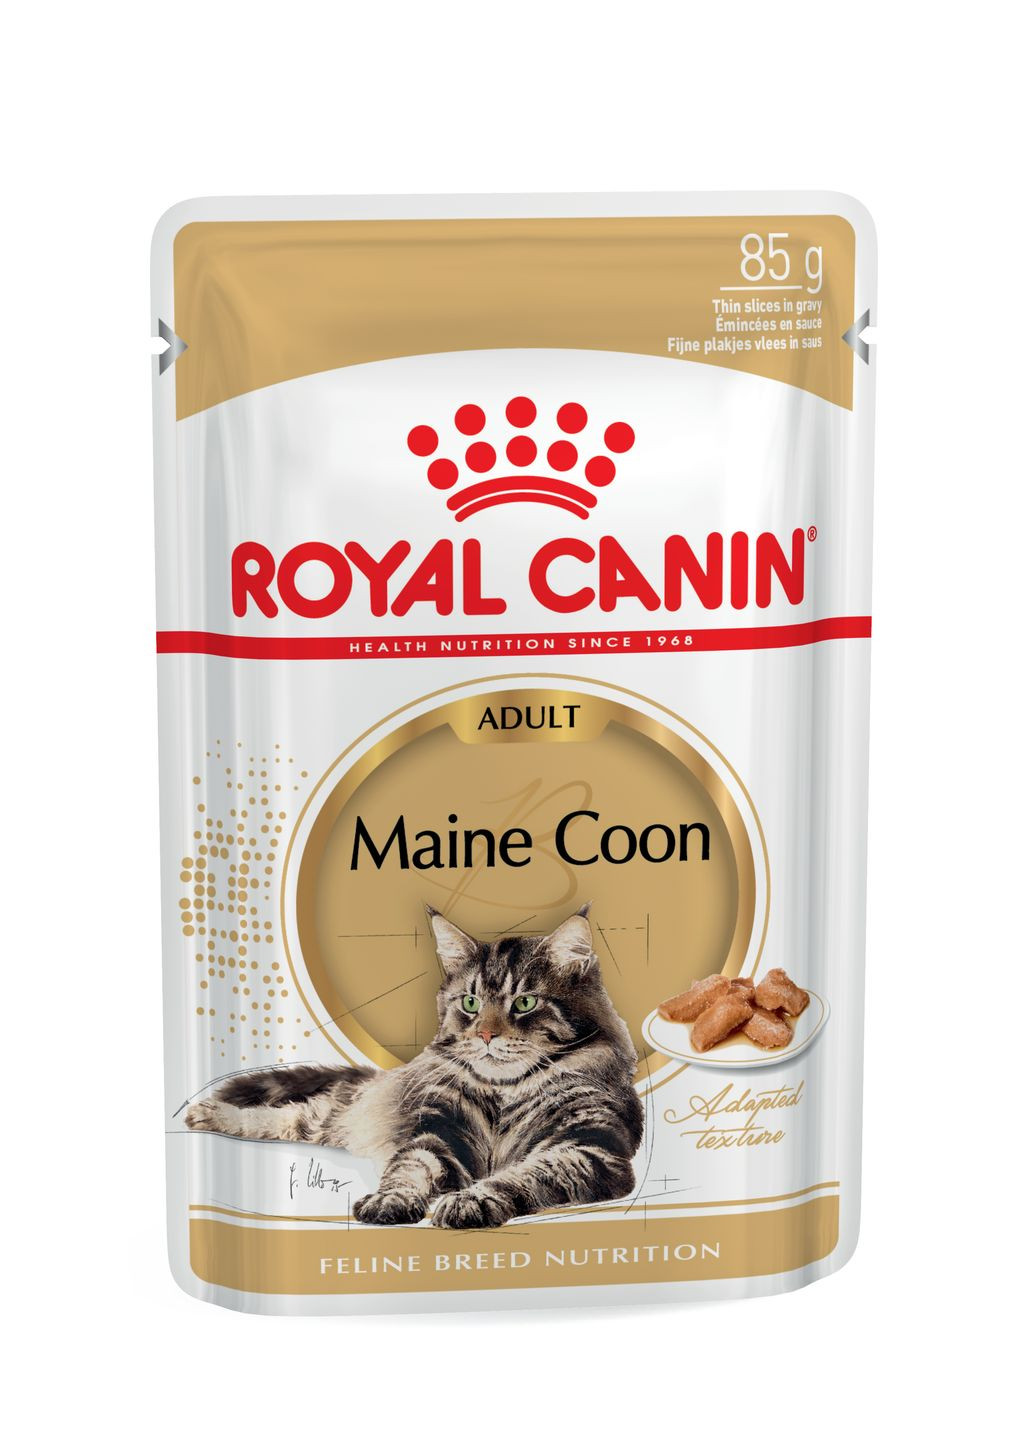 Консерва для взрослых котов Maine Coon Adult пауч породы Мейн кун в соусе 85 г 2031001 Royal Canin (268025102)